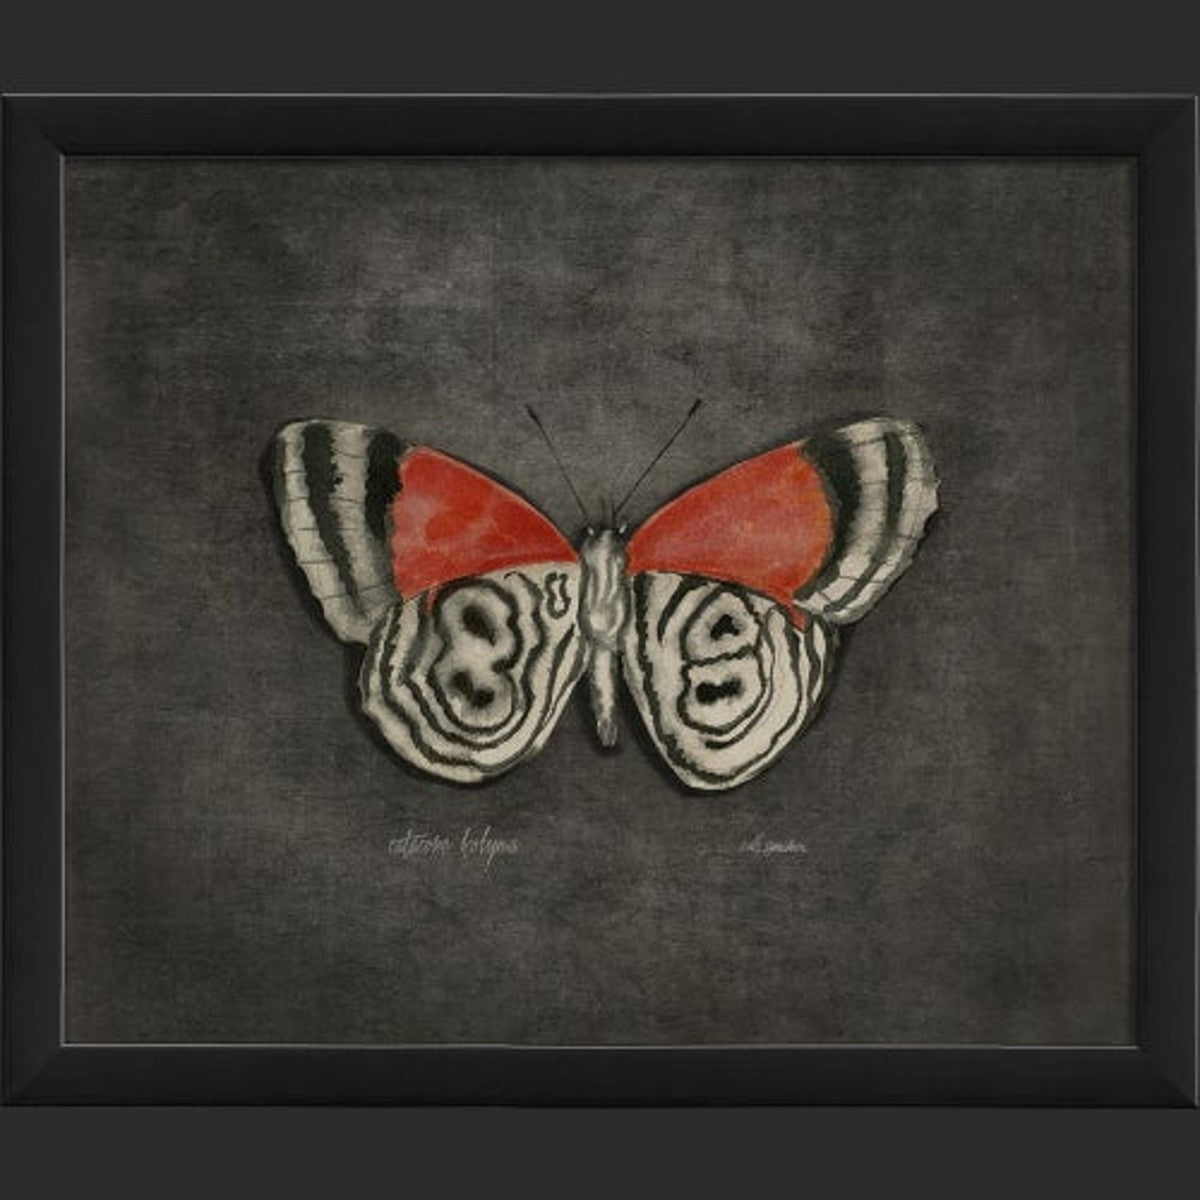 Framed Butterfly Print - Catacore Kolyma